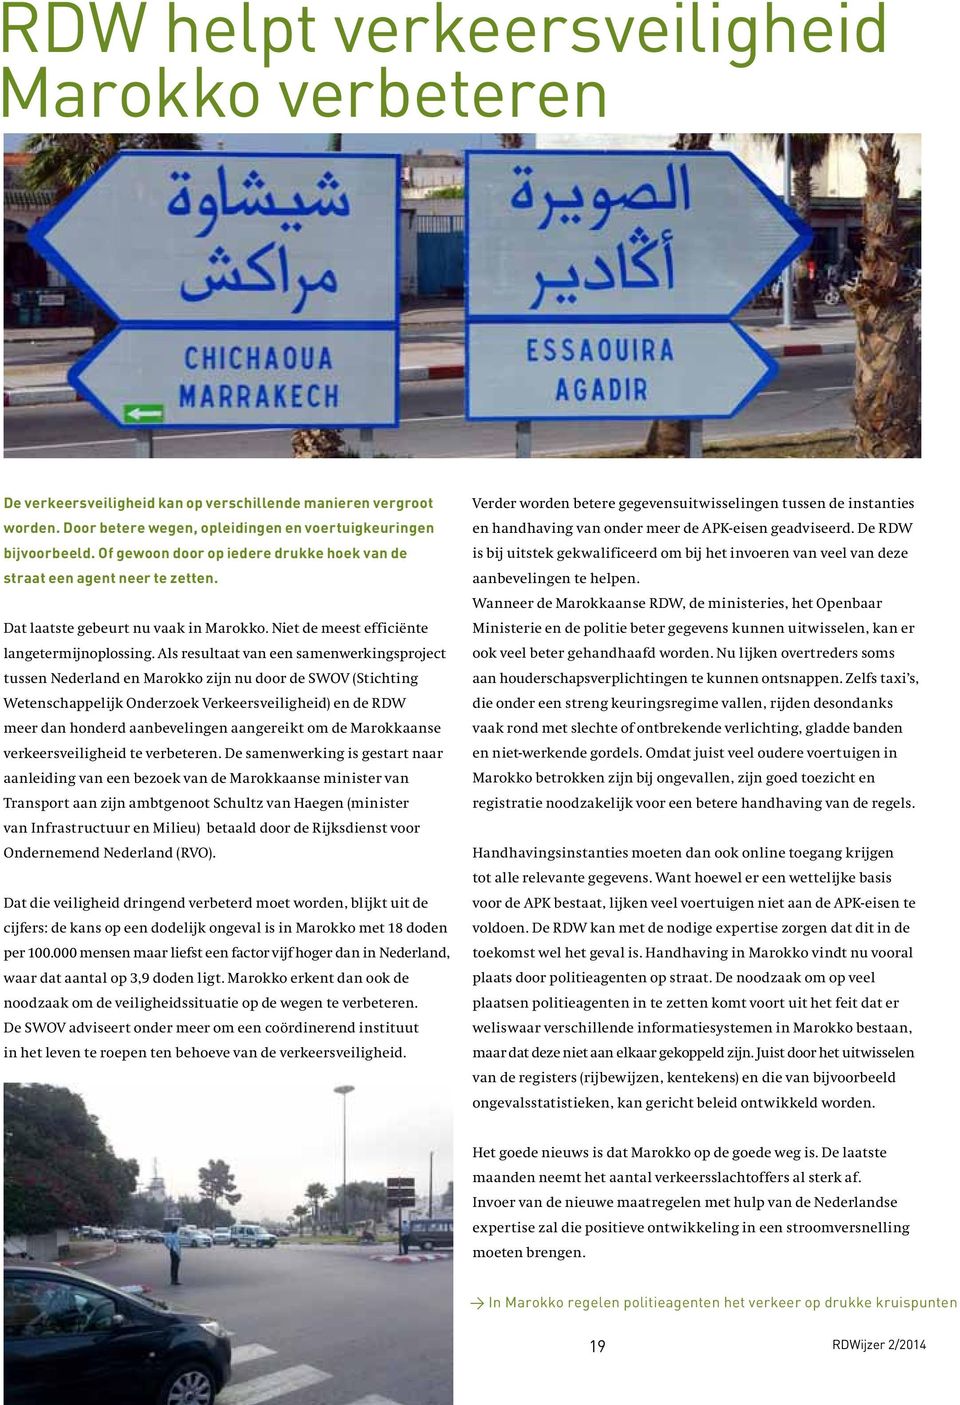 Als resultaat van een samenwerkingsproject tussen Nederland en Marokko zijn nu door de SWOV (Stichting Wetenschappelijk Onderzoek Verkeersveiligheid) en de RDW meer dan honderd aanbevelingen